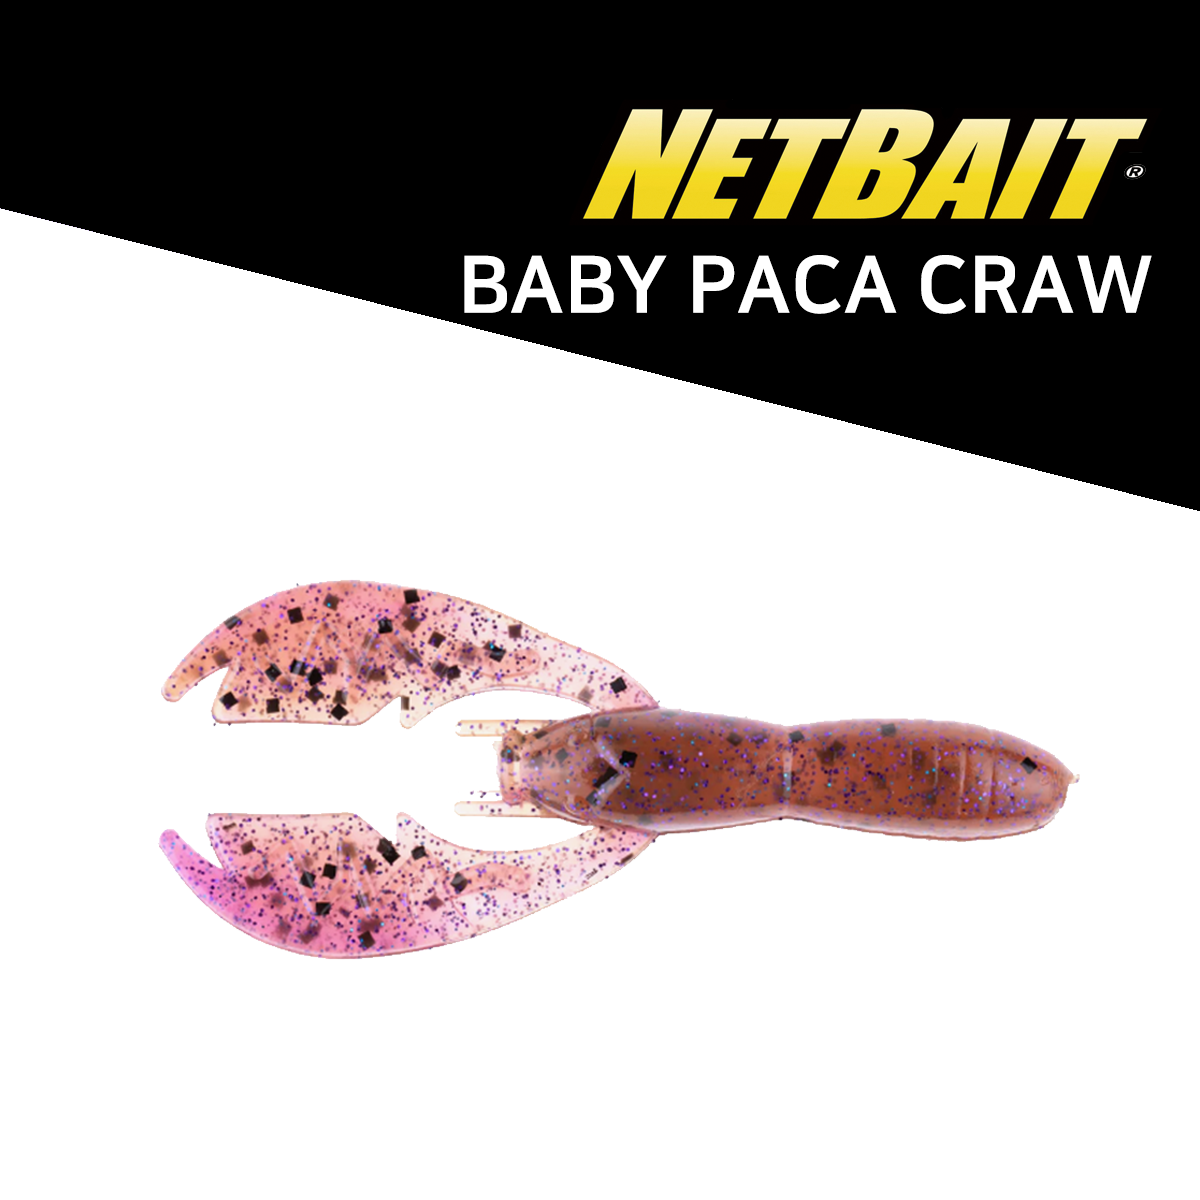 NETBAIT BABY PACA CRAW